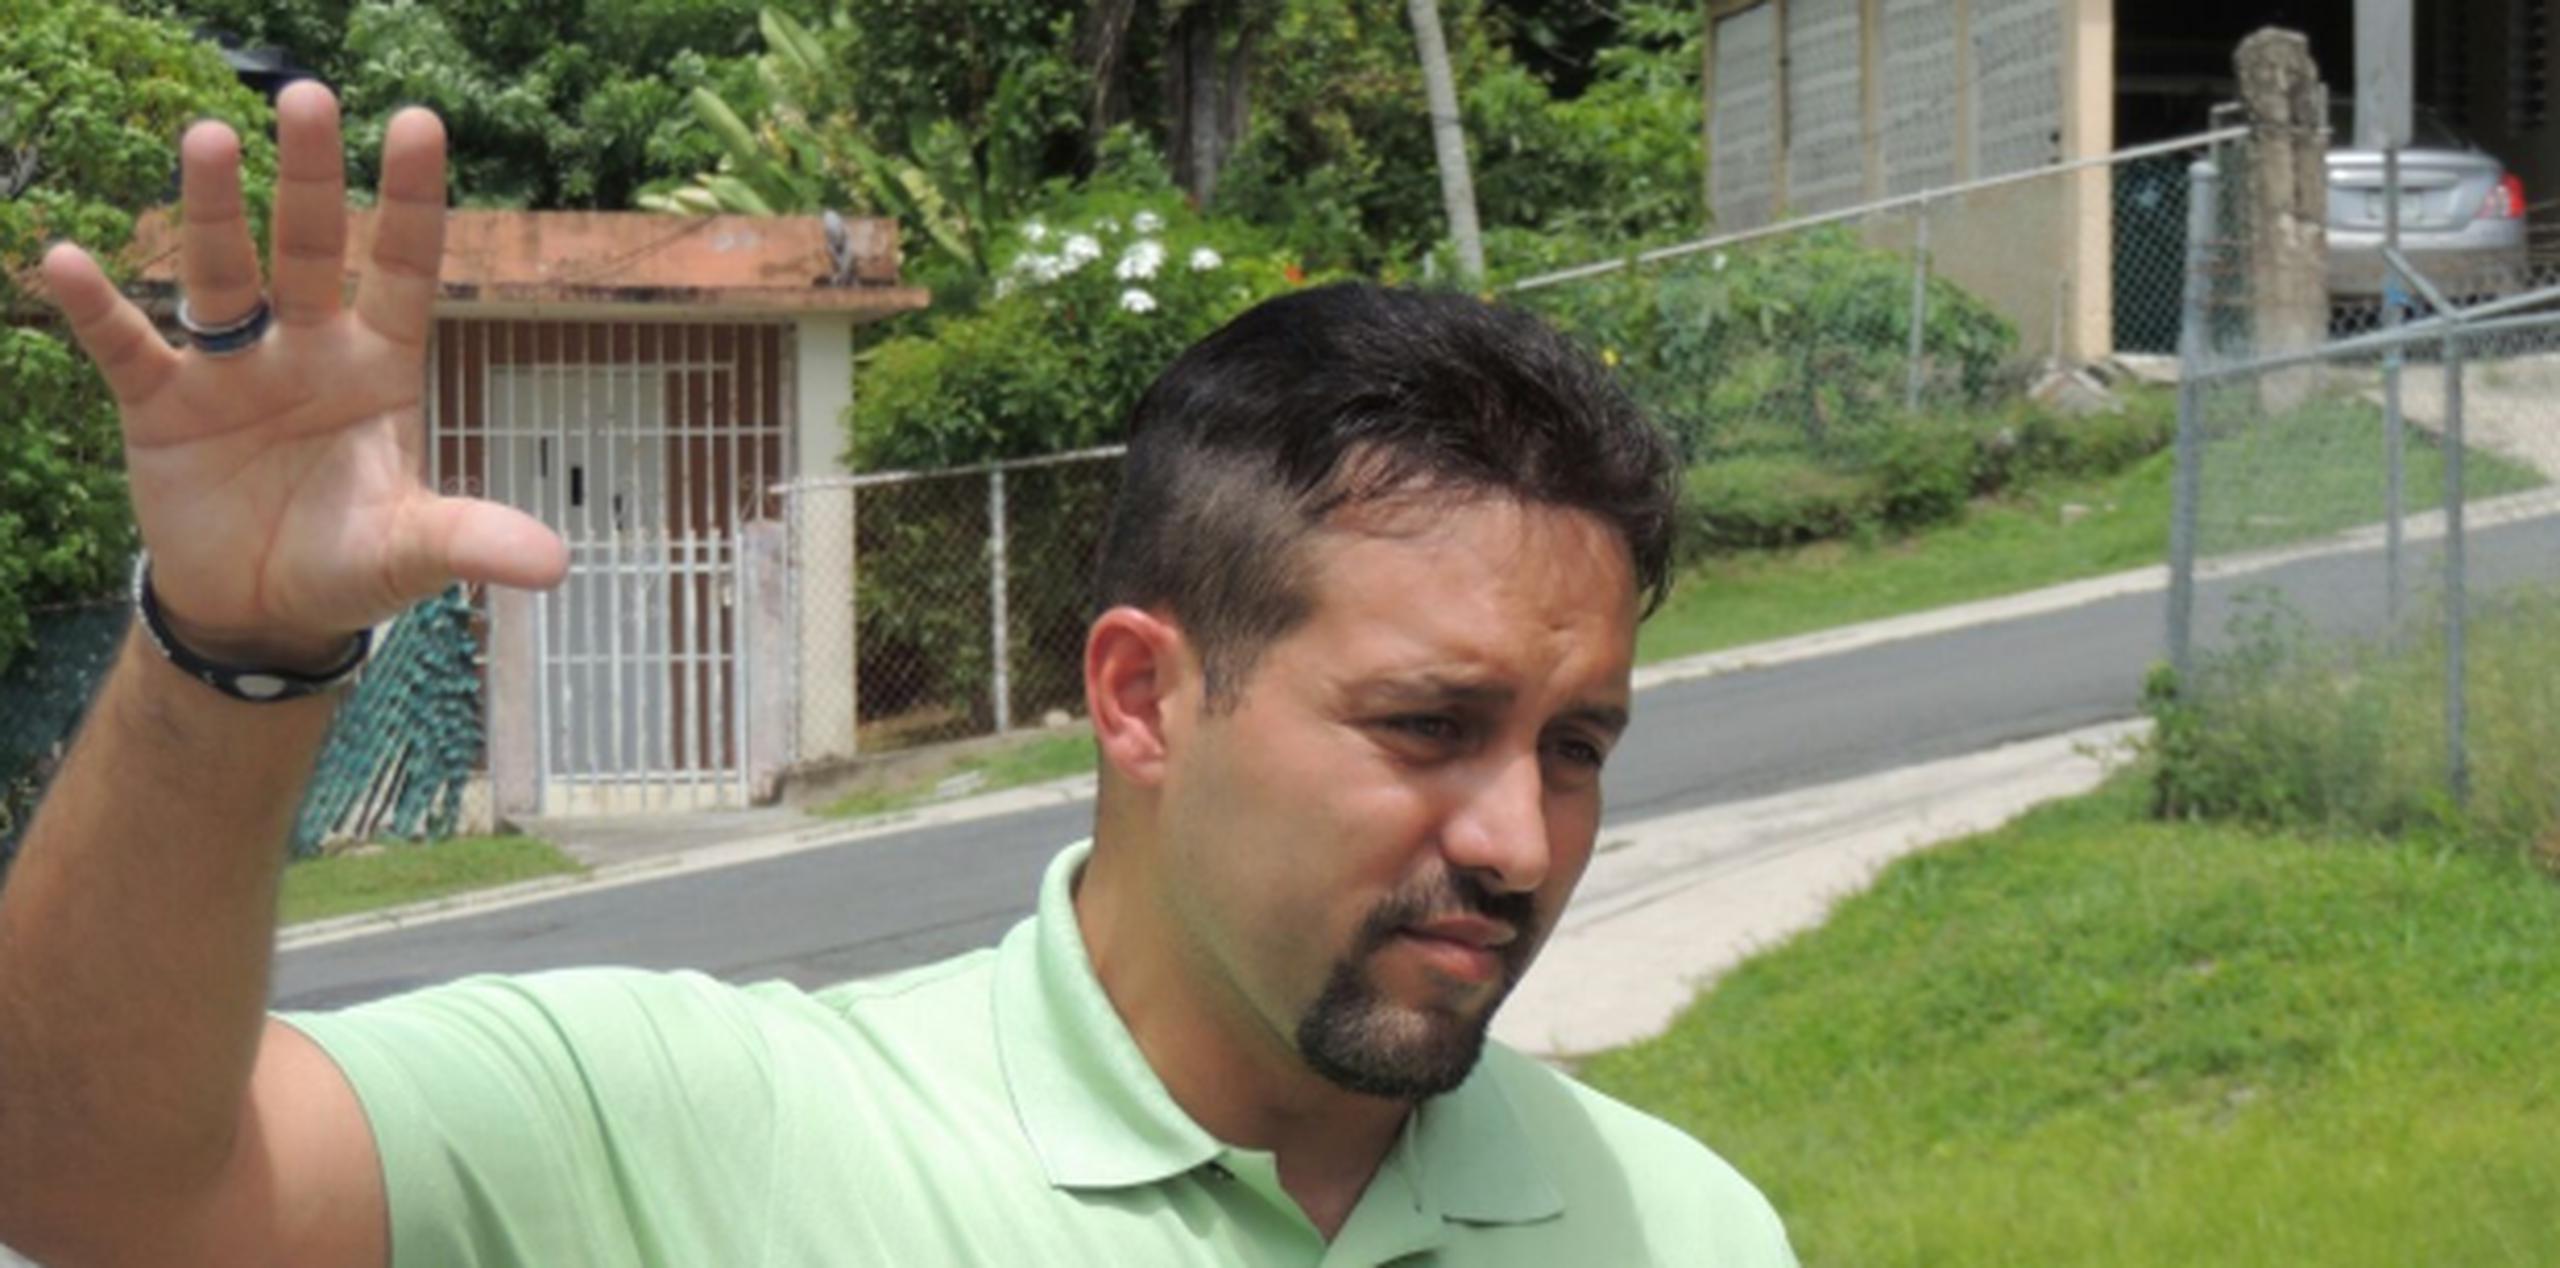 Según el recurso legal, en diciembre de 2015 el hoy representante Pagán Cuadrado le pidió $2,500 al demandante "para realizarse un implante de cabello, debido a que así se luciría mejor para las fotos de la campaña". (Archivo)